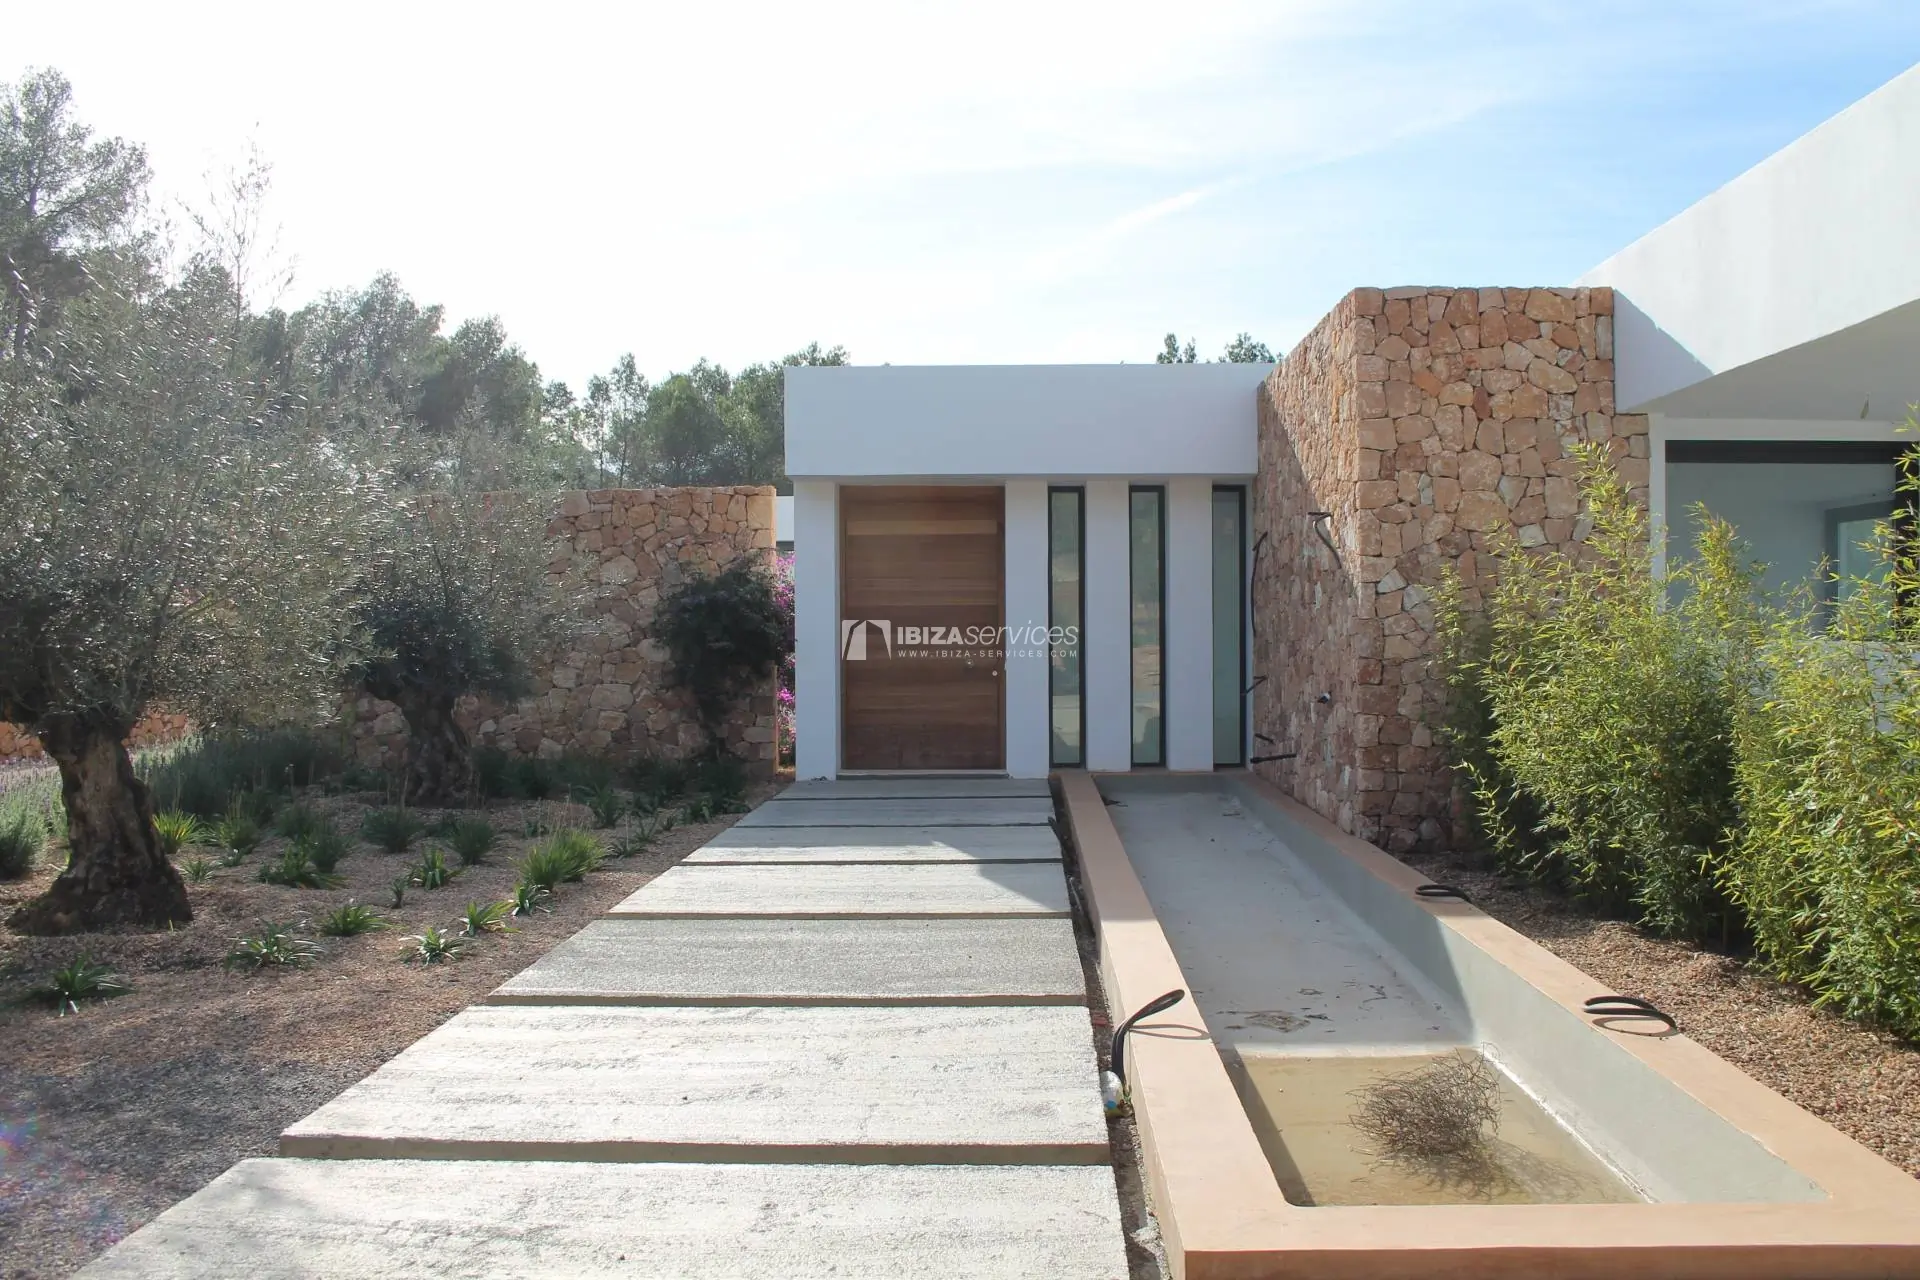 Comprar villa moderna a estrenar 5 dormitorios  en San Agustin Ibiza.